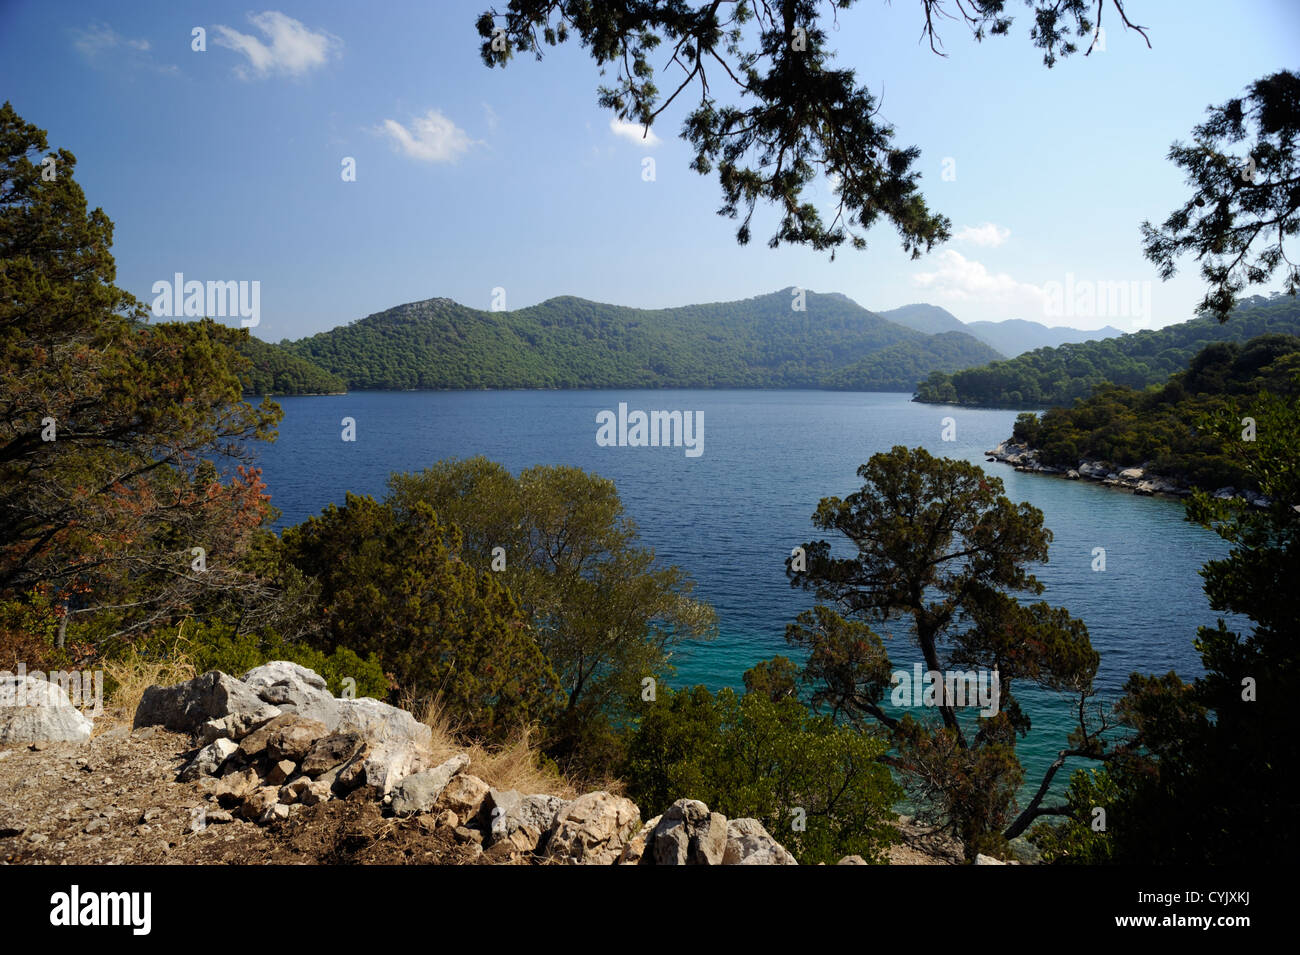 Croatie, Dalmatie, île de Mljet, lac Veliko Jezero Banque D'Images